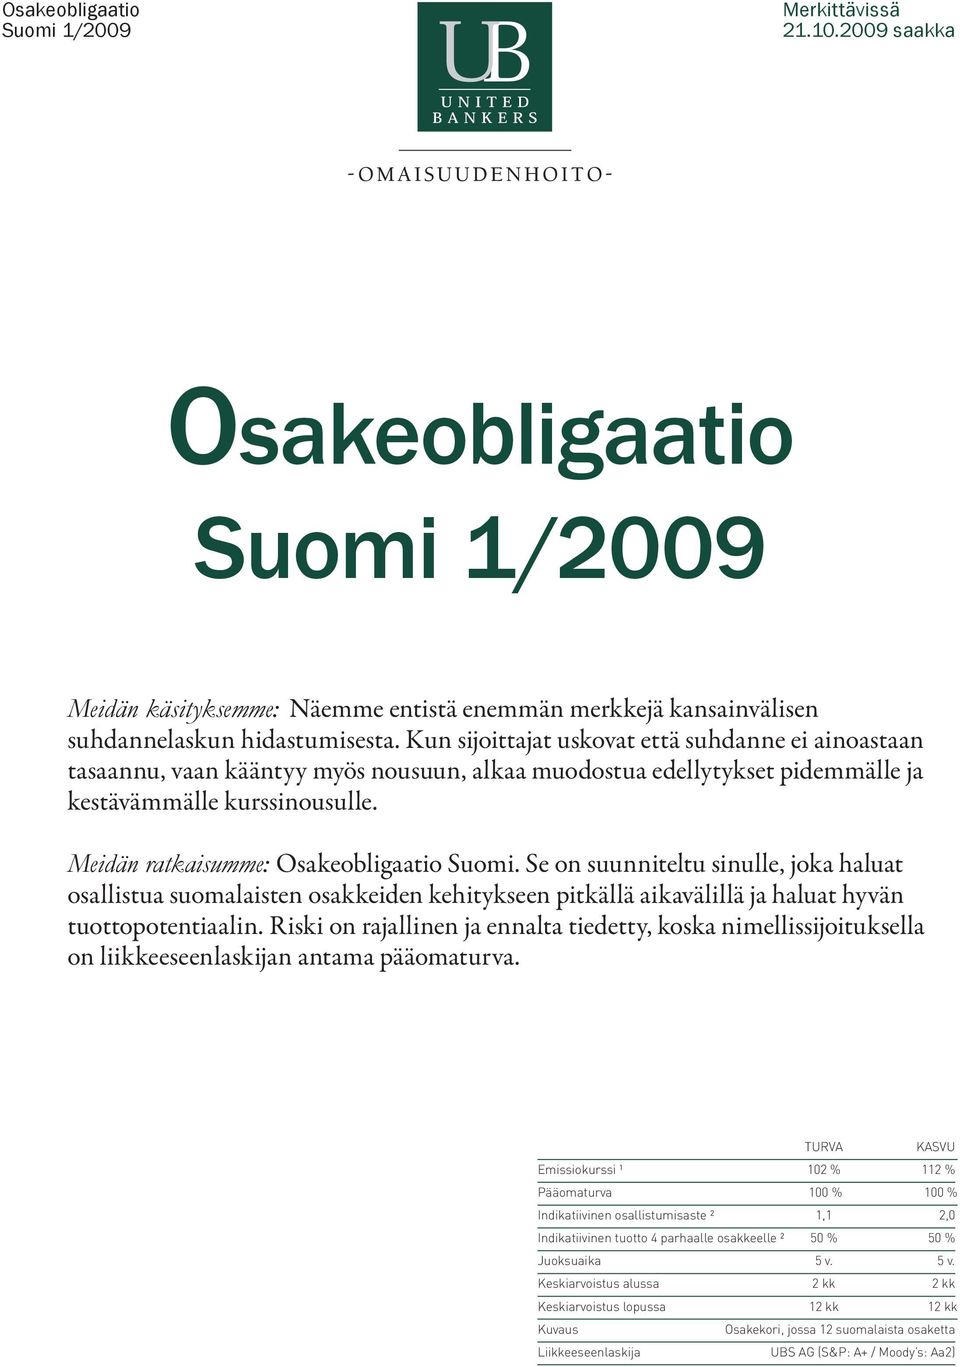 Meidän ratkaisumme: Osakeobligaatio Suomi. Se on suunniteltu sinulle, joka haluat osallistua suomalaisten osakkeiden kehitykseen pitkällä aikavälillä ja haluat hyvän tuottopotentiaalin.